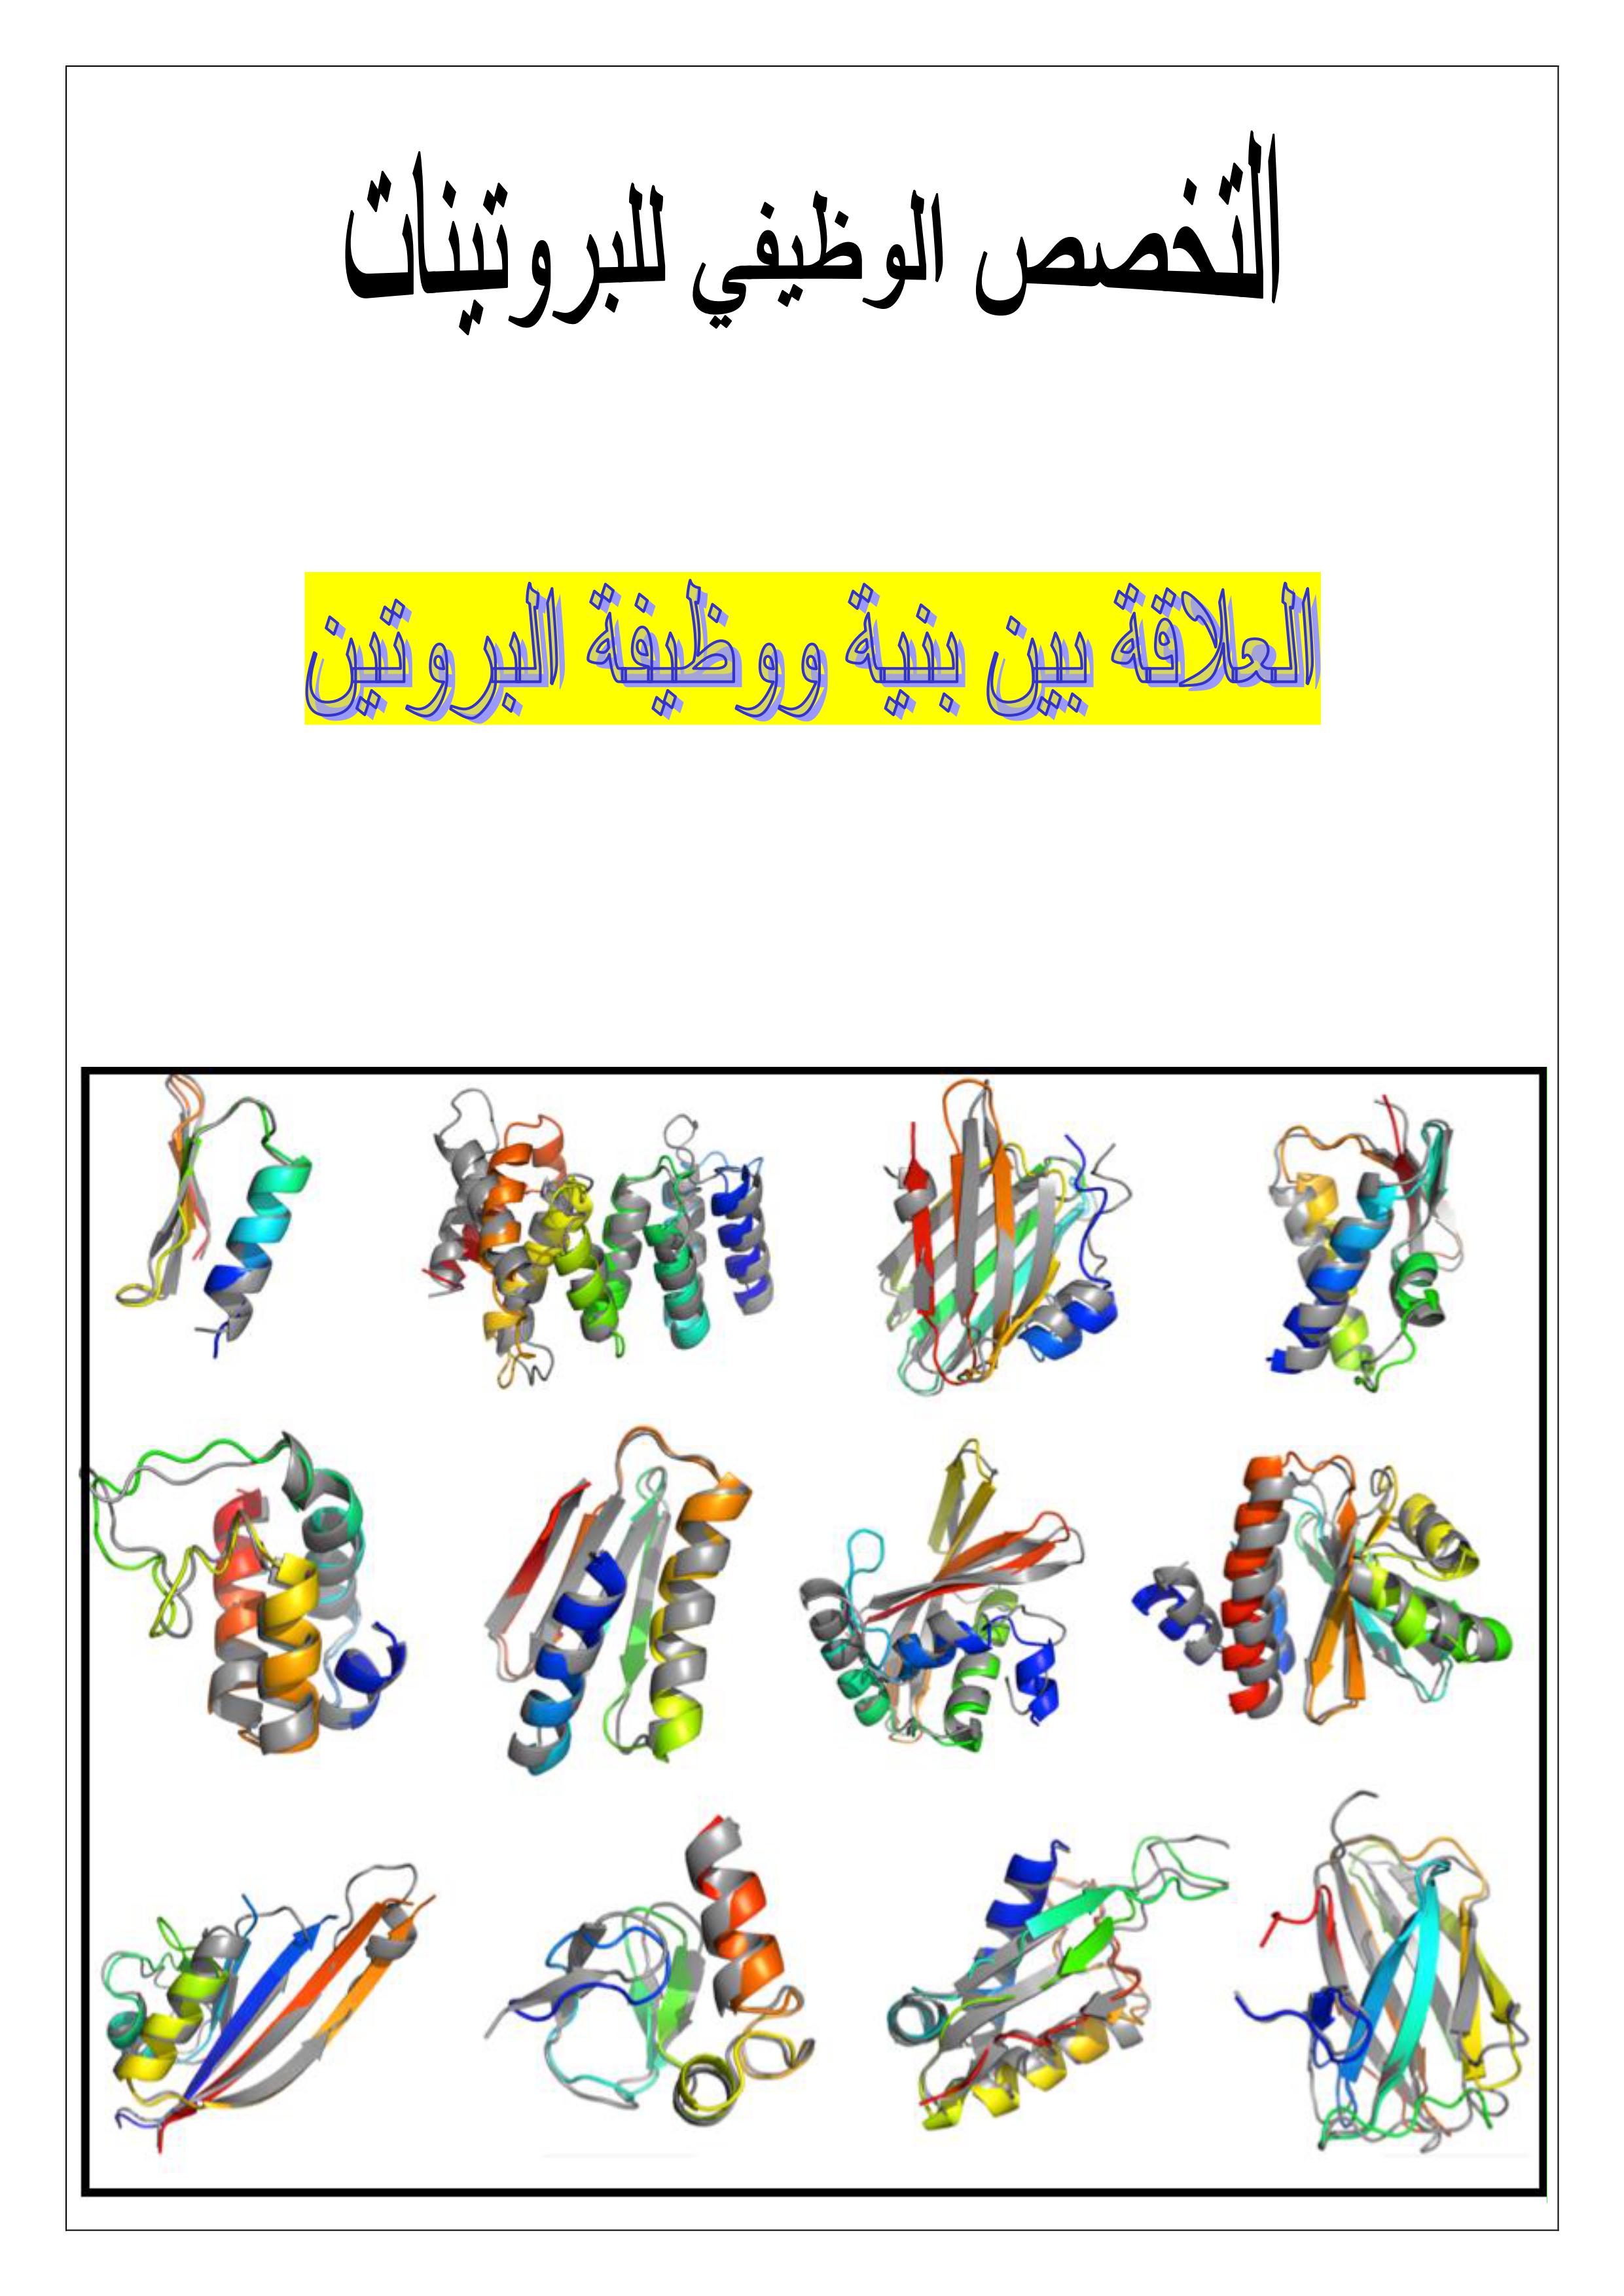 مجلة وحدة العلاقة بين بنية ووظيفة البروتين 2020 P_1406xokq41